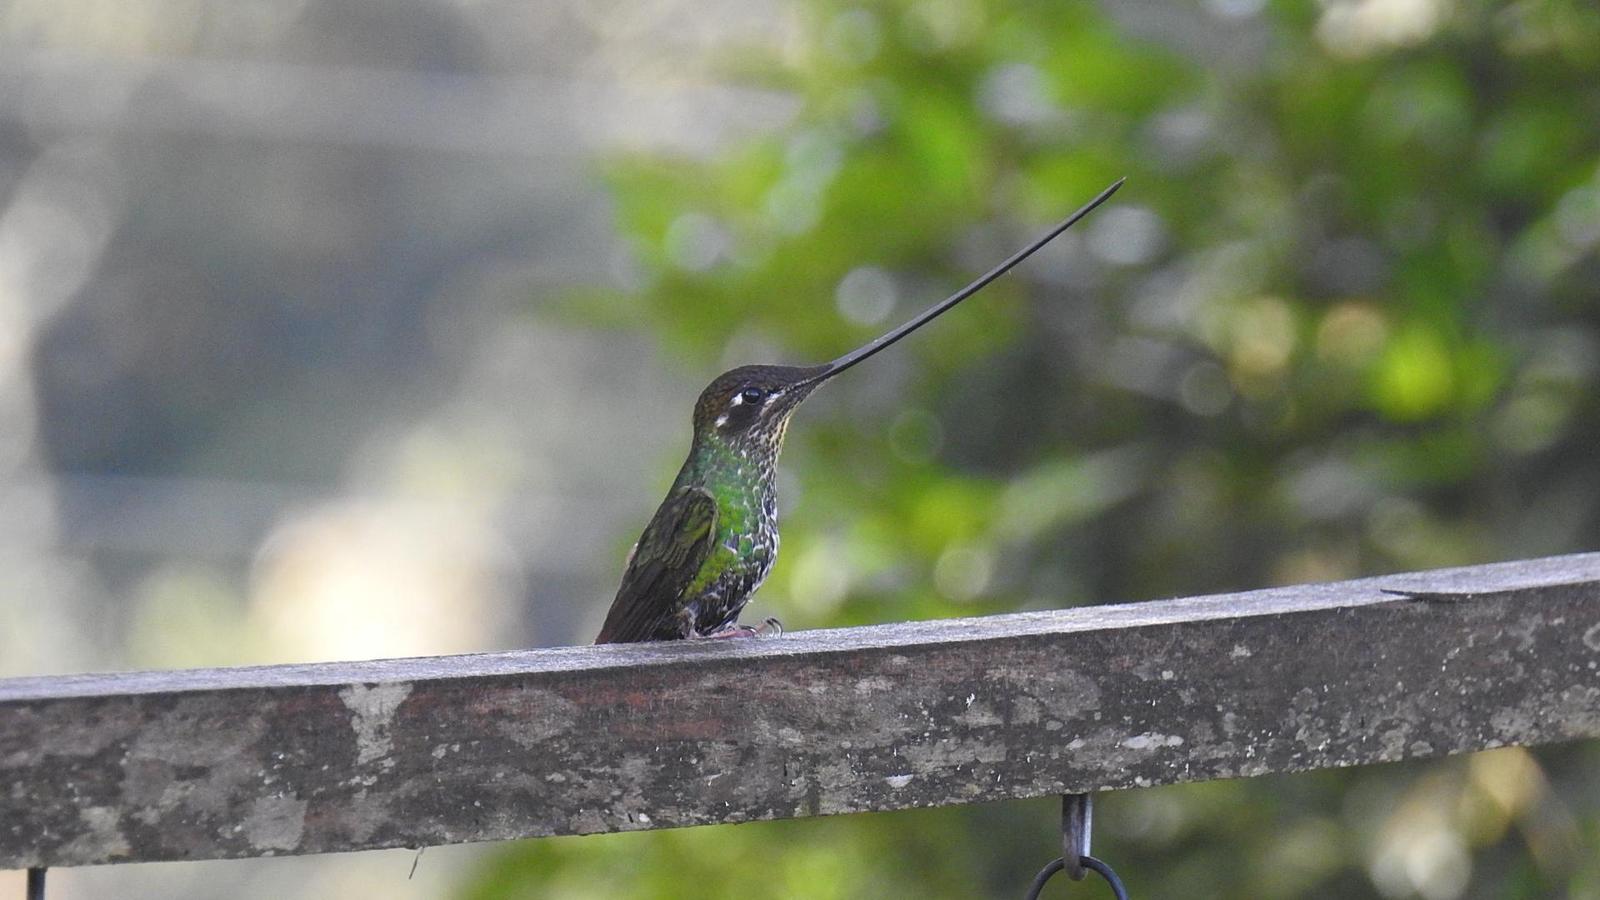 Sword-billed Hummingbird Photo by Julio Delgado